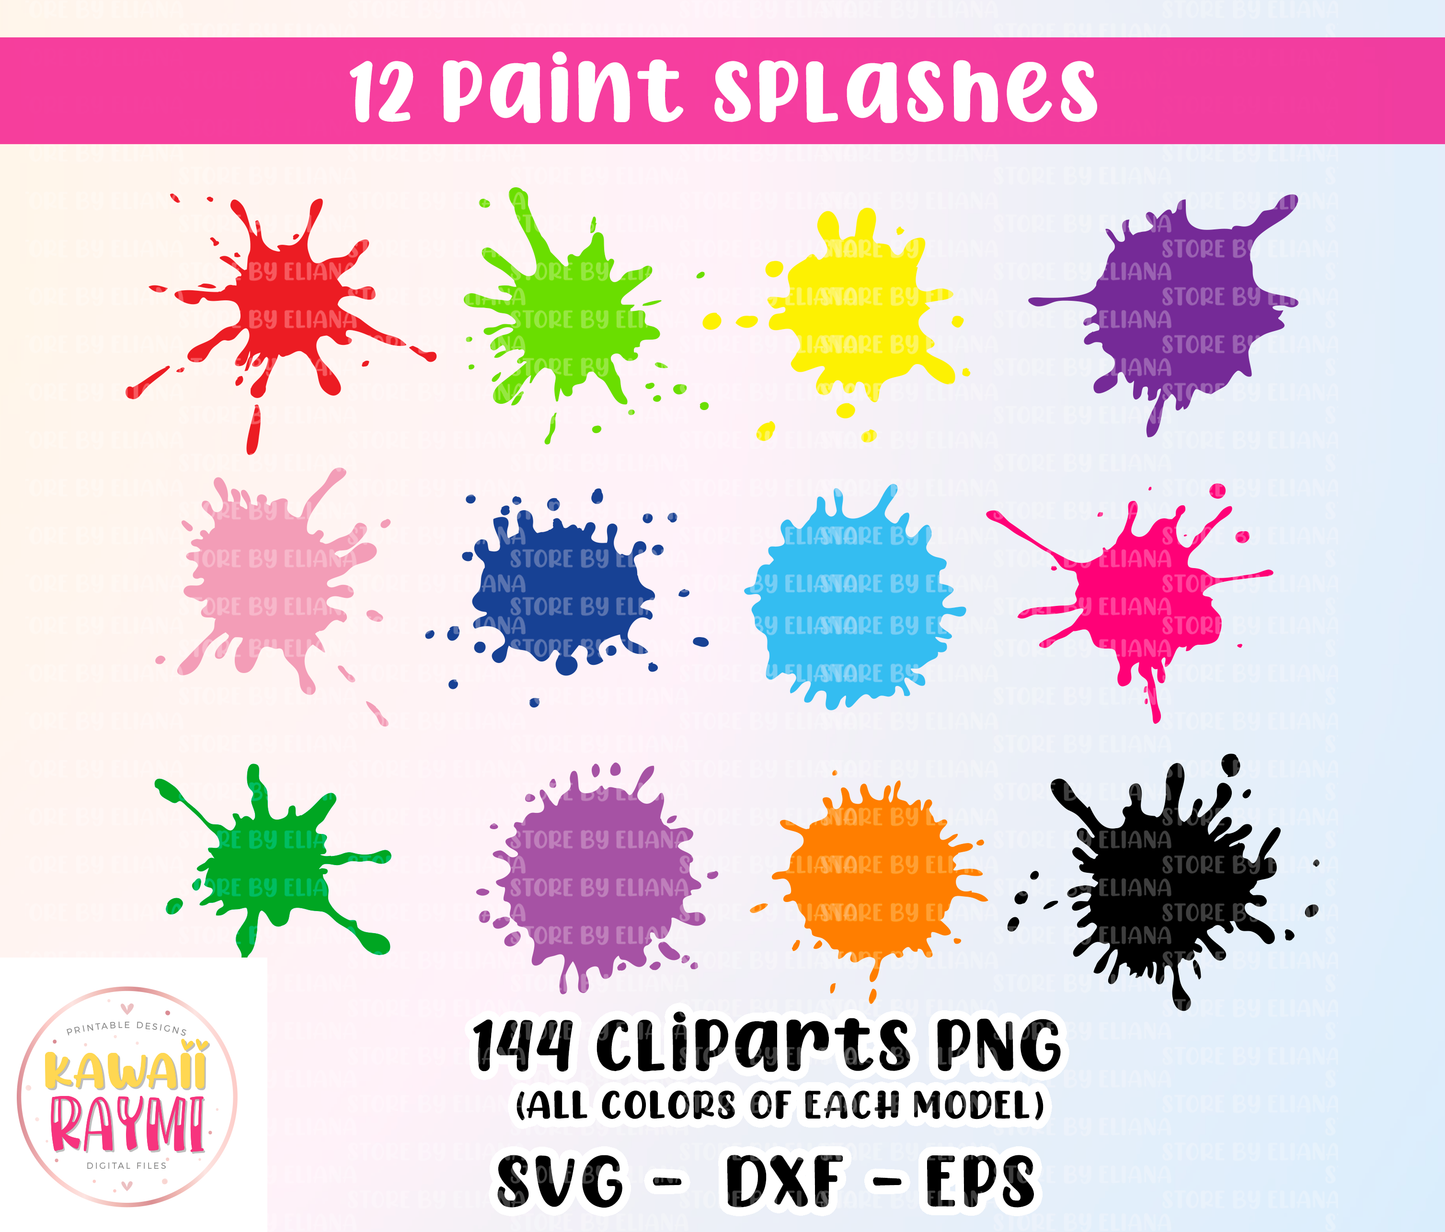 Paint splashes svg, cricut, Paint Splatter SVG, Bundle, Paint Splats Svg, Paint Svg, Clipart, Vector